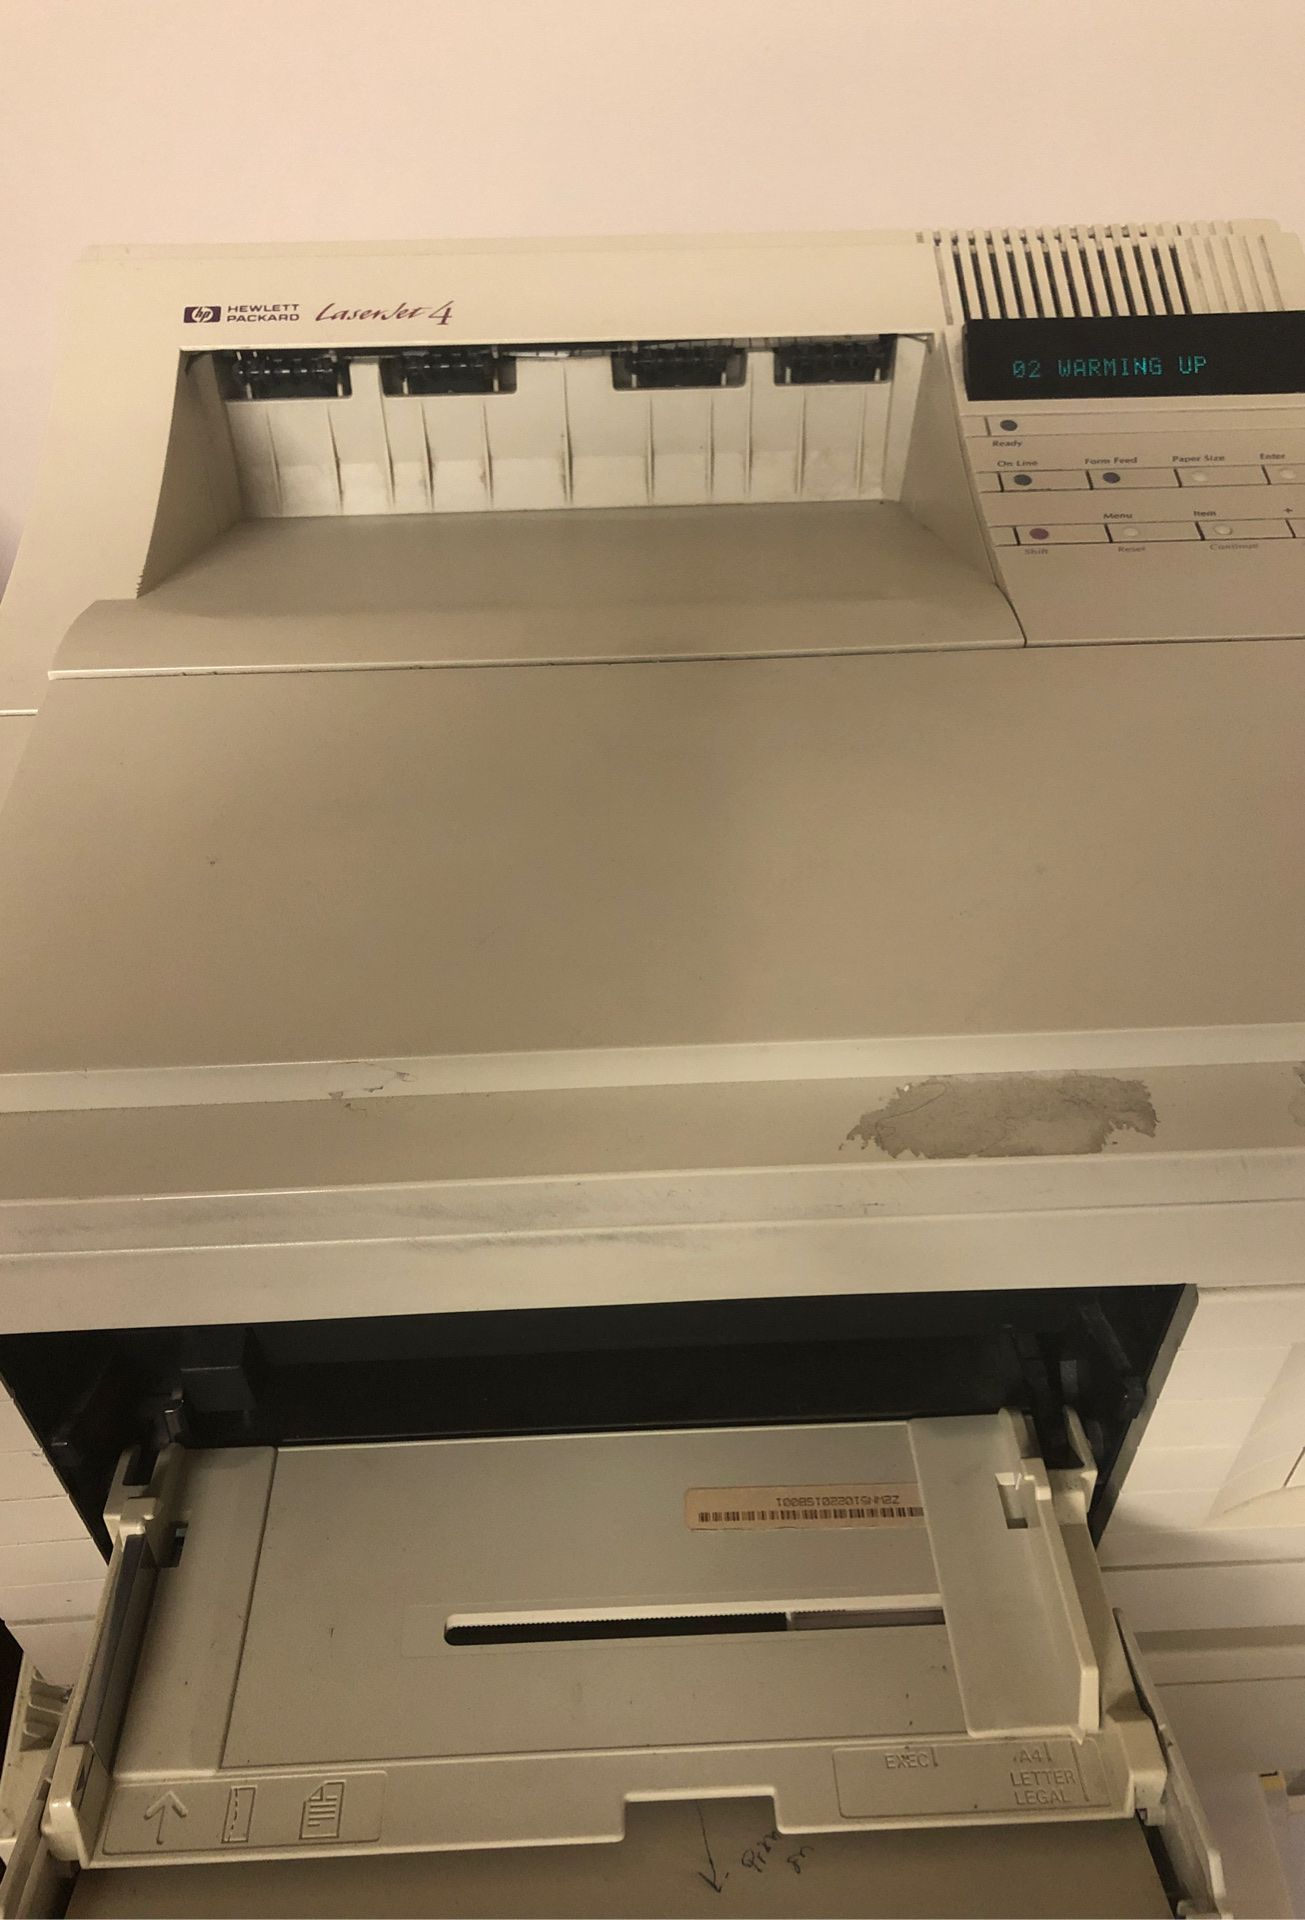 HP Laser Jet 4 Printer